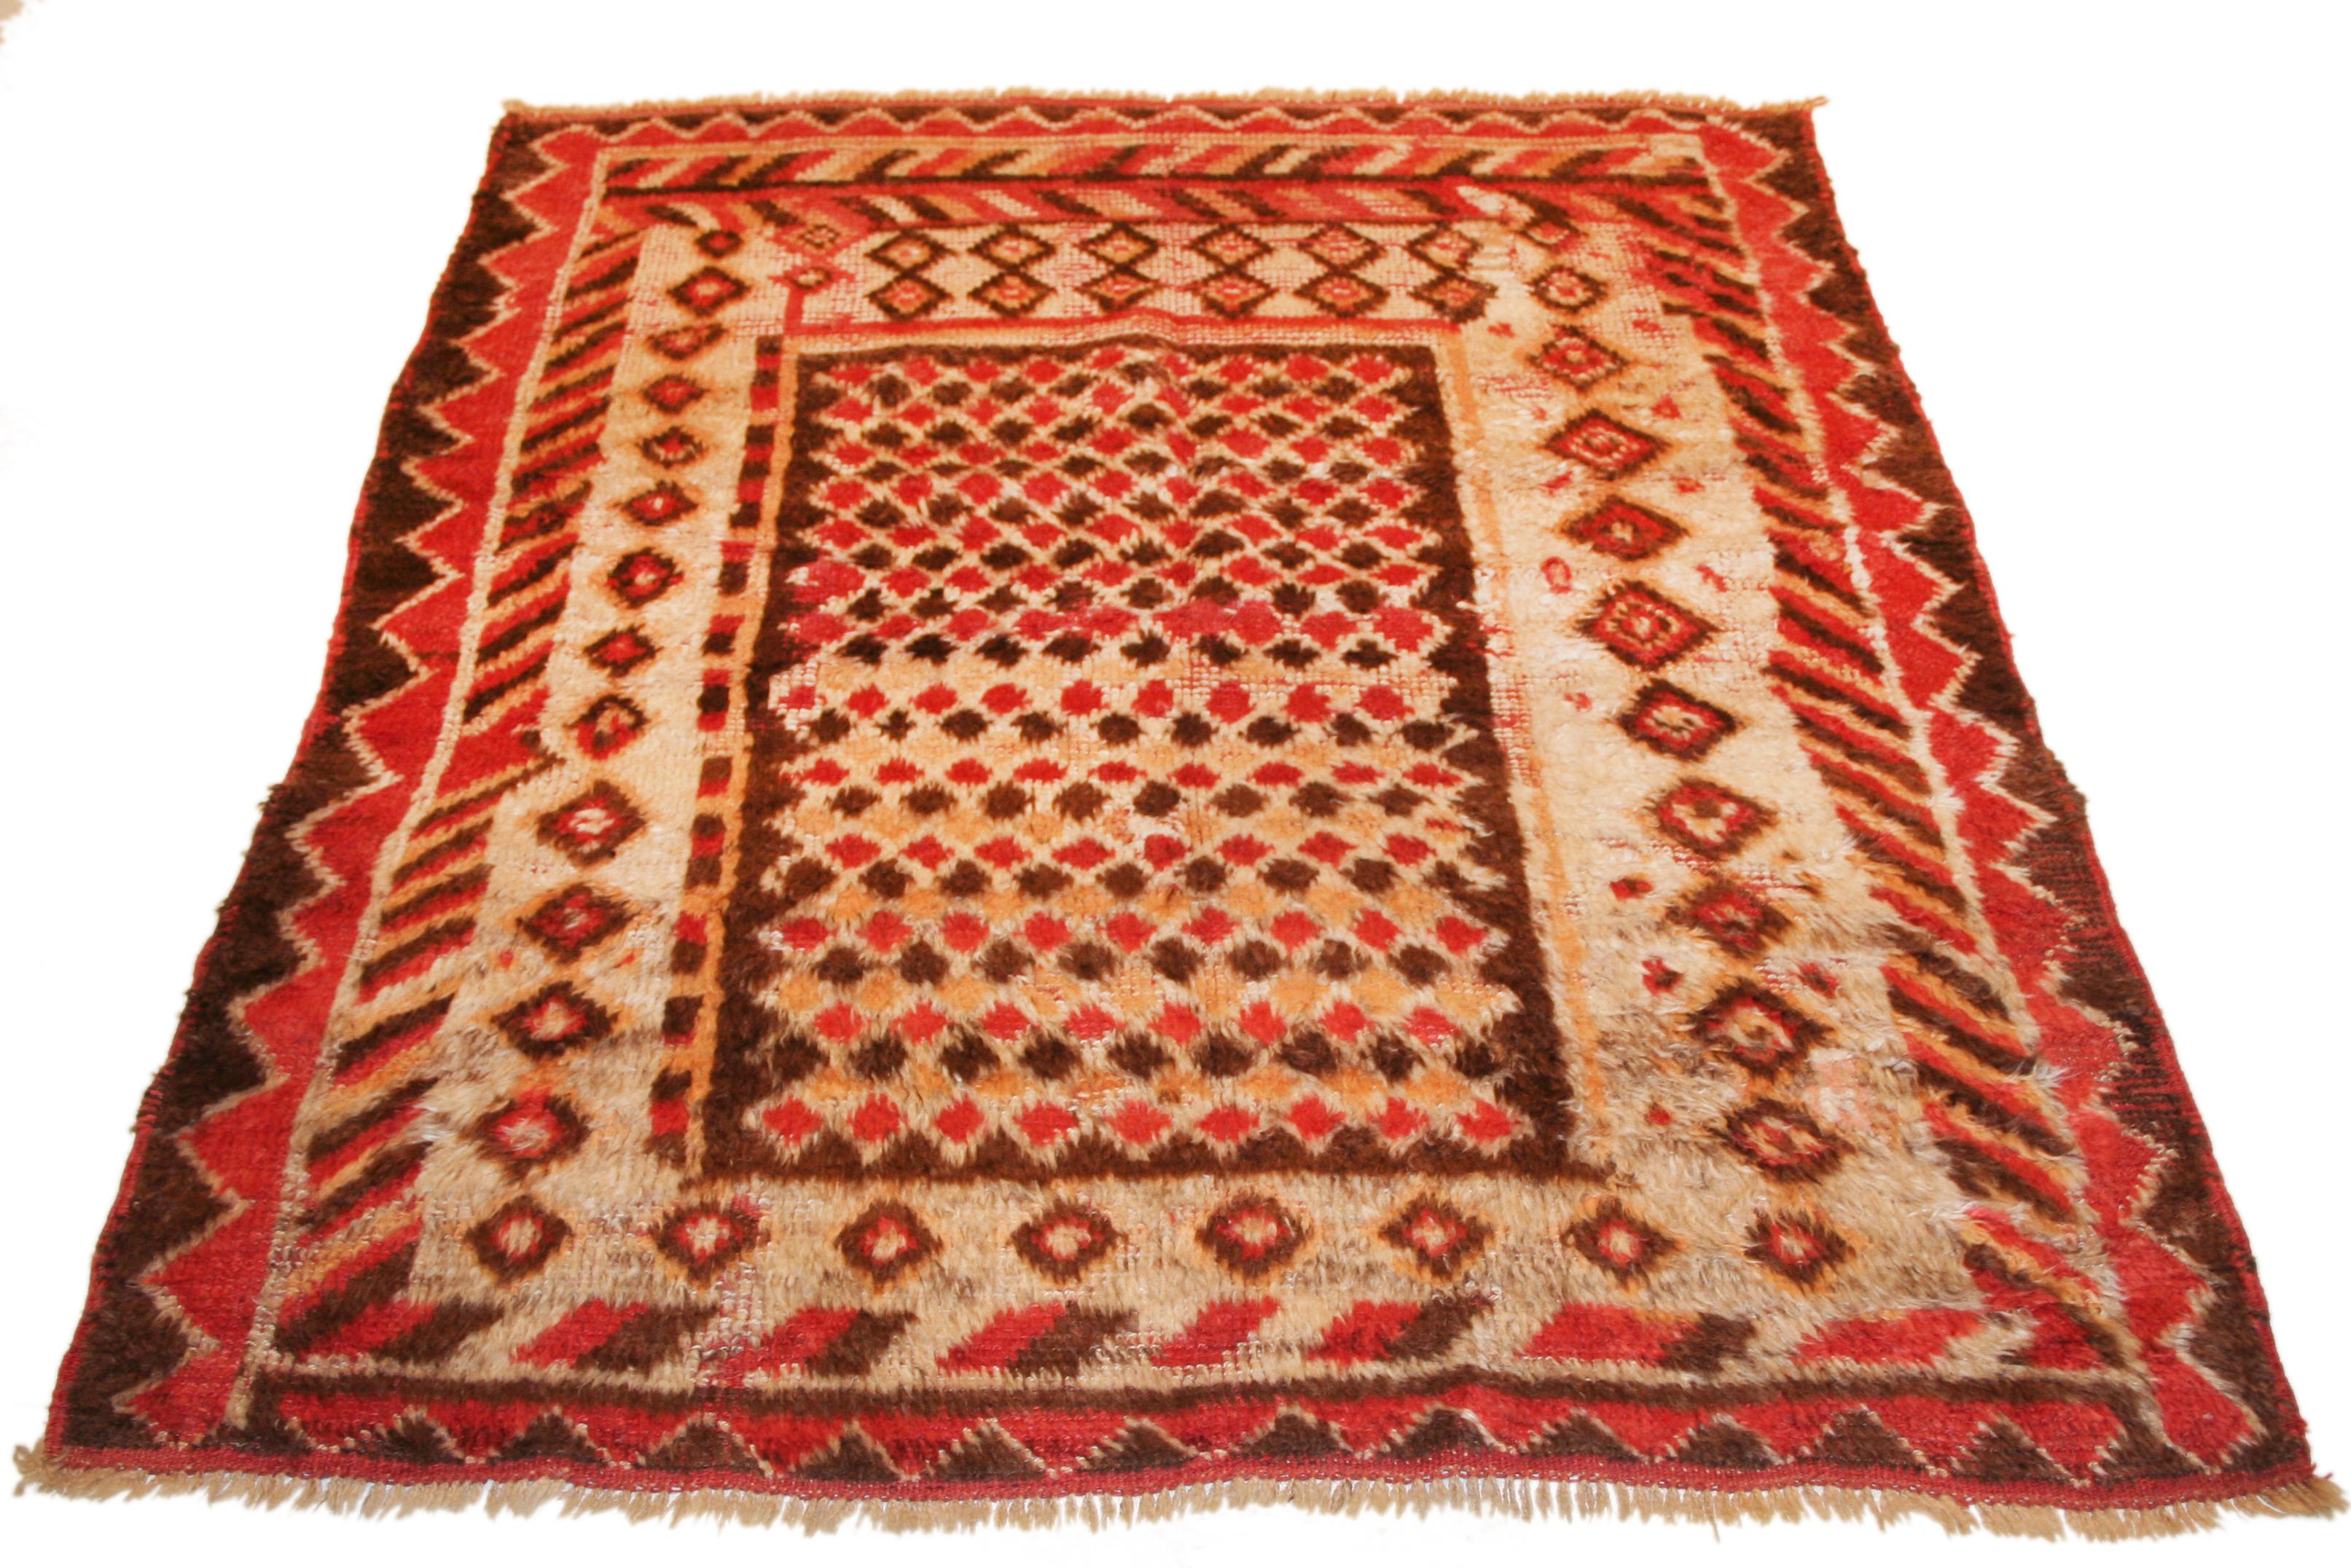 Tulu-Teppiche sind eine der frühesten Formen der Nomadenflor-Webkunst und werden in der Regel mit einem mittel hohen Flor geknüpft, da sie als Teppiche für das Zelt gedacht waren. Die Muster sind recht einfach, von völlig offenen Feldern bis hin zu